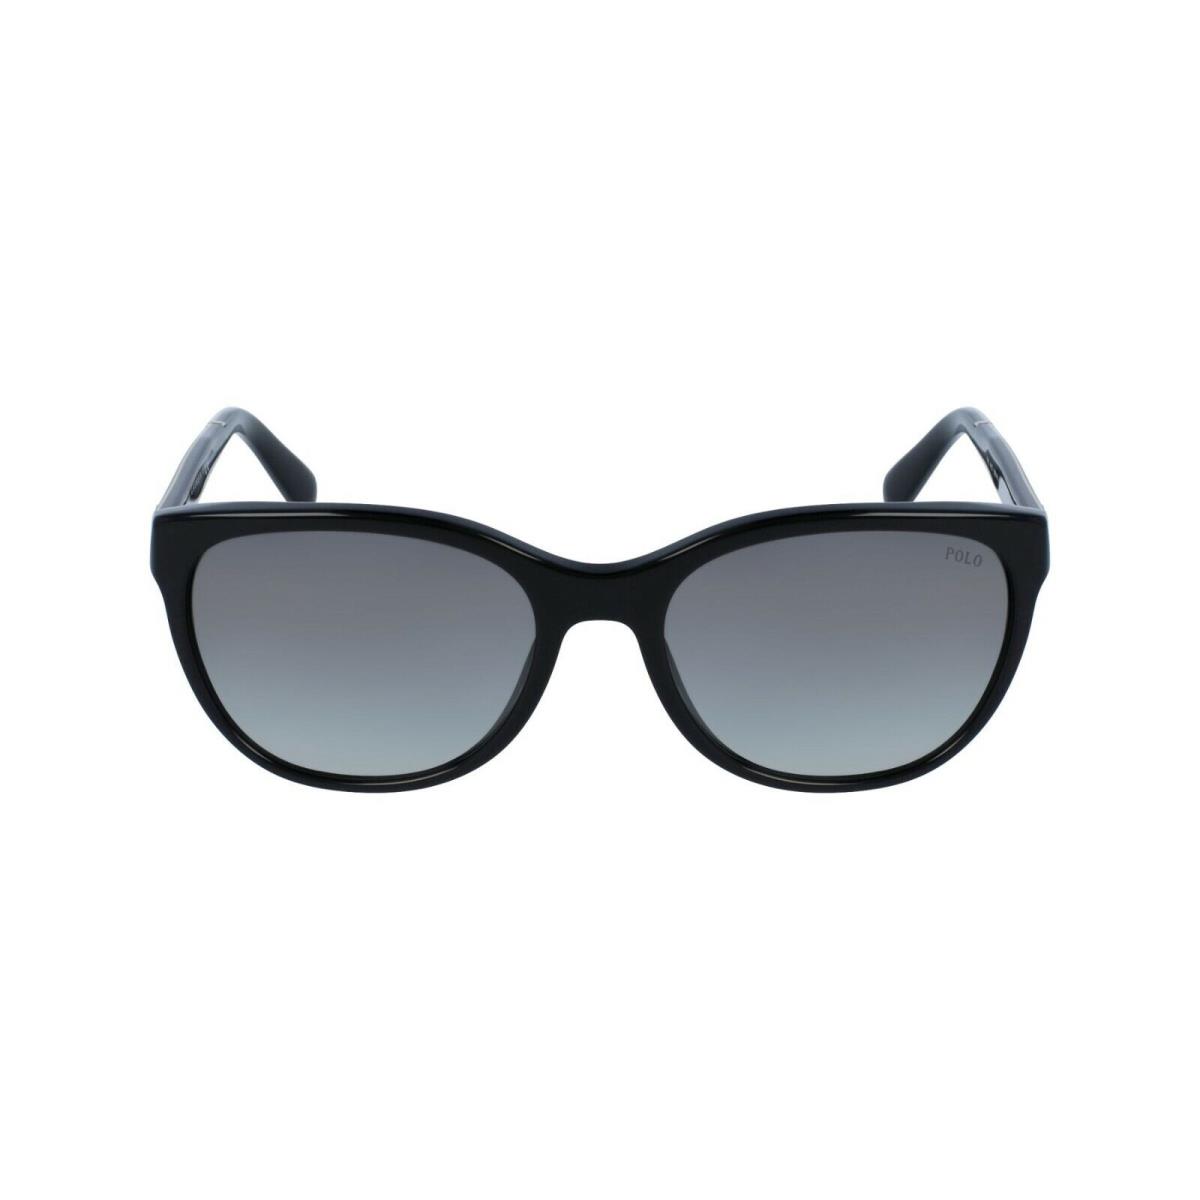 Polo Ralph Lauren Sunglasses PH4117 5001/11 Black Frames 56MM ST